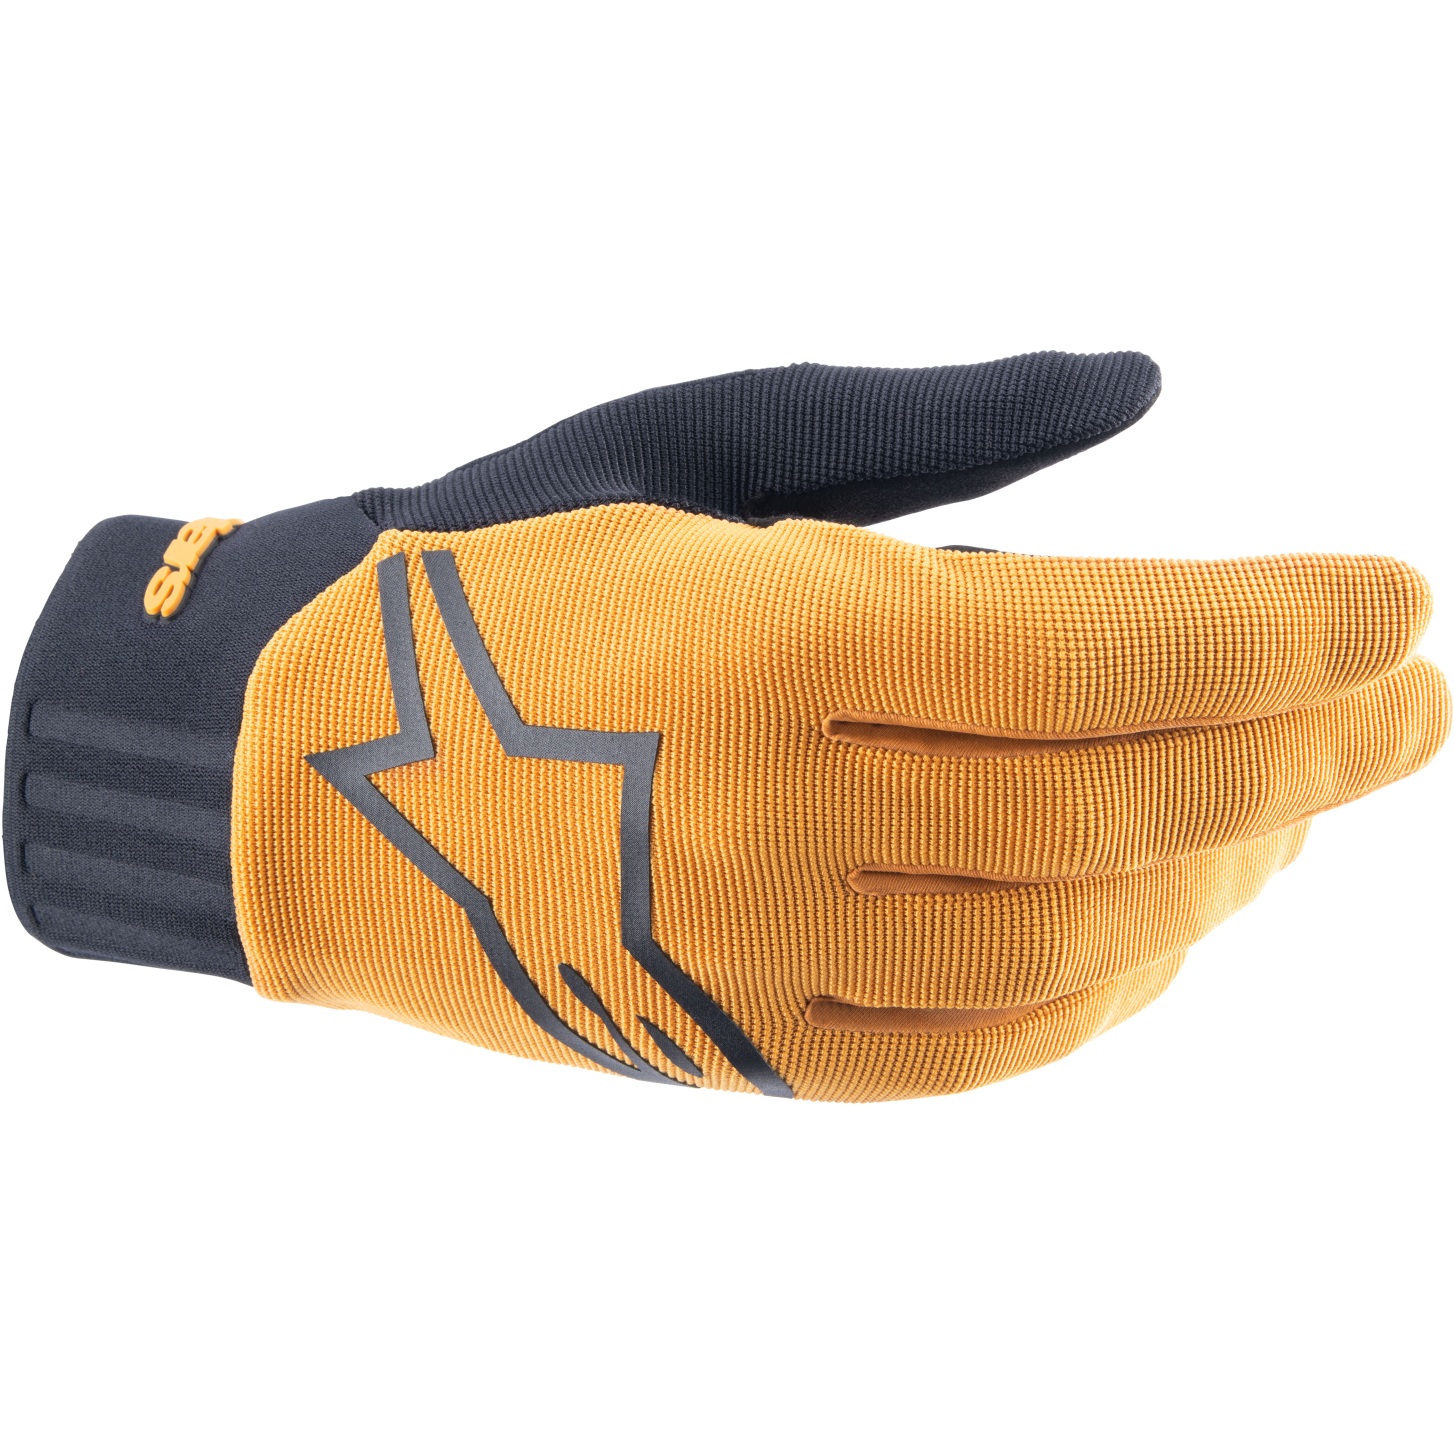 Picture of Alpinestars A-Dura Gloves - dark gold